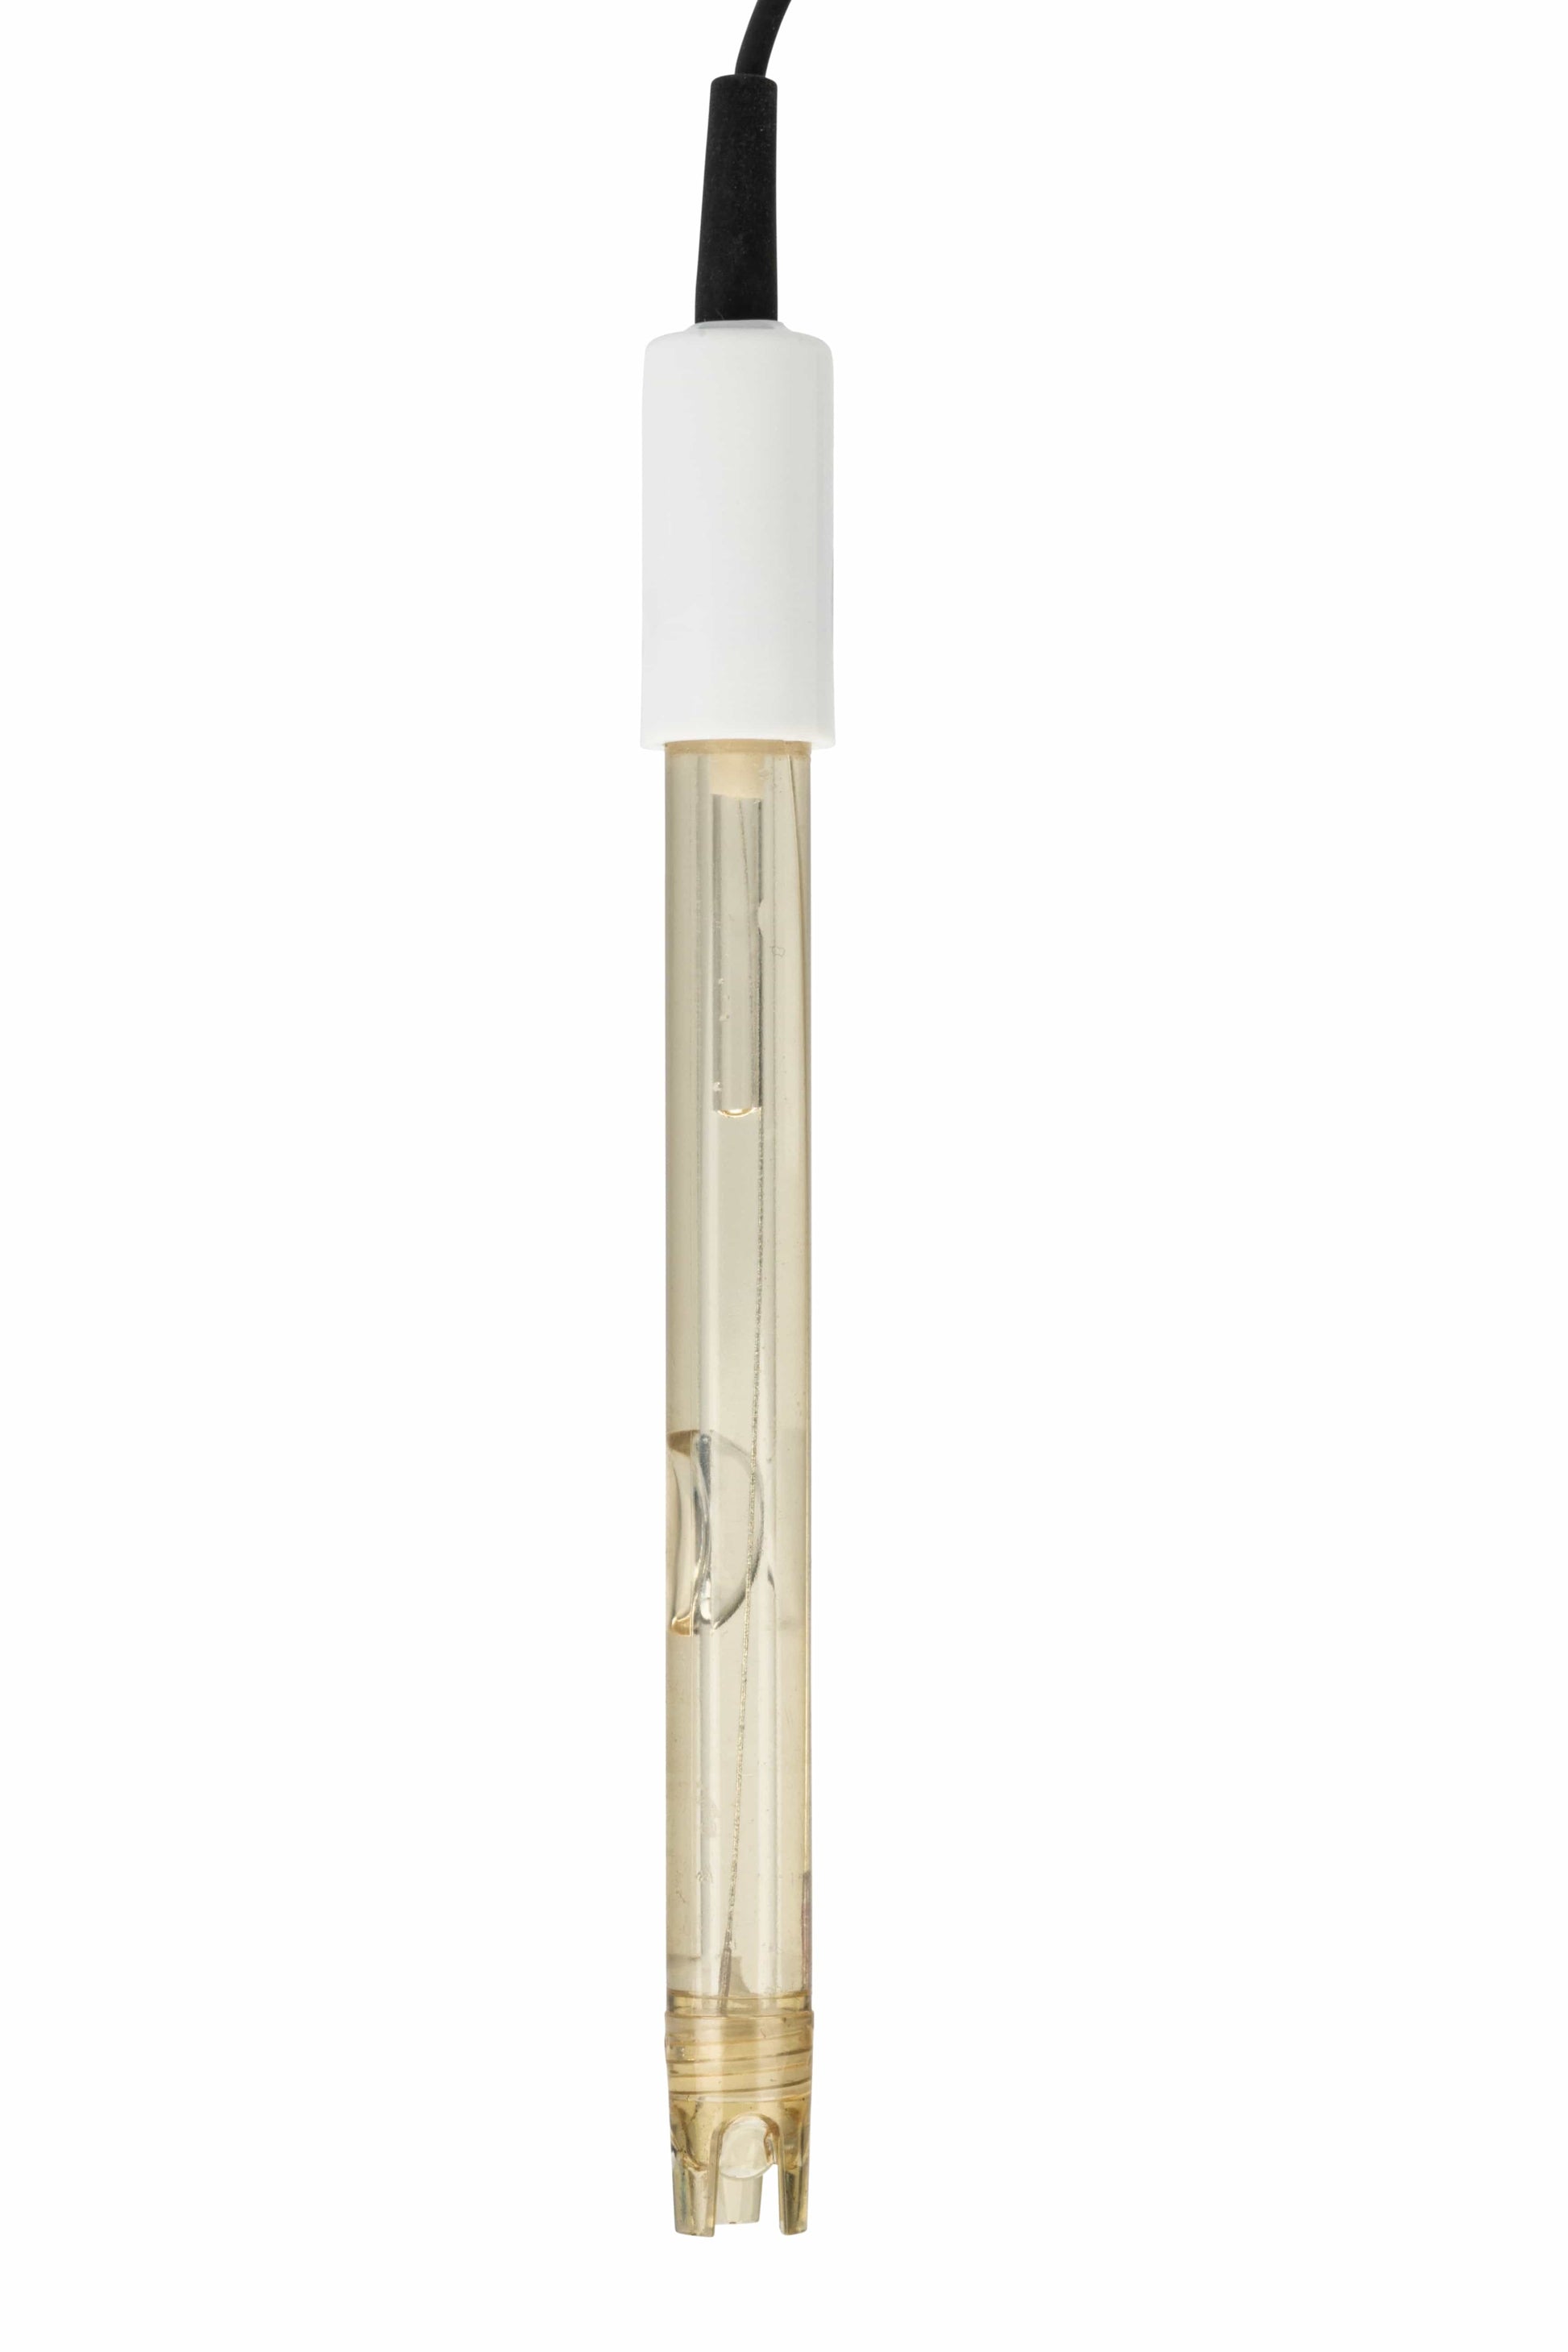 une Électrode de pH à usage général de Thermometer.eu avec un cordon blanc sur fond blanc.